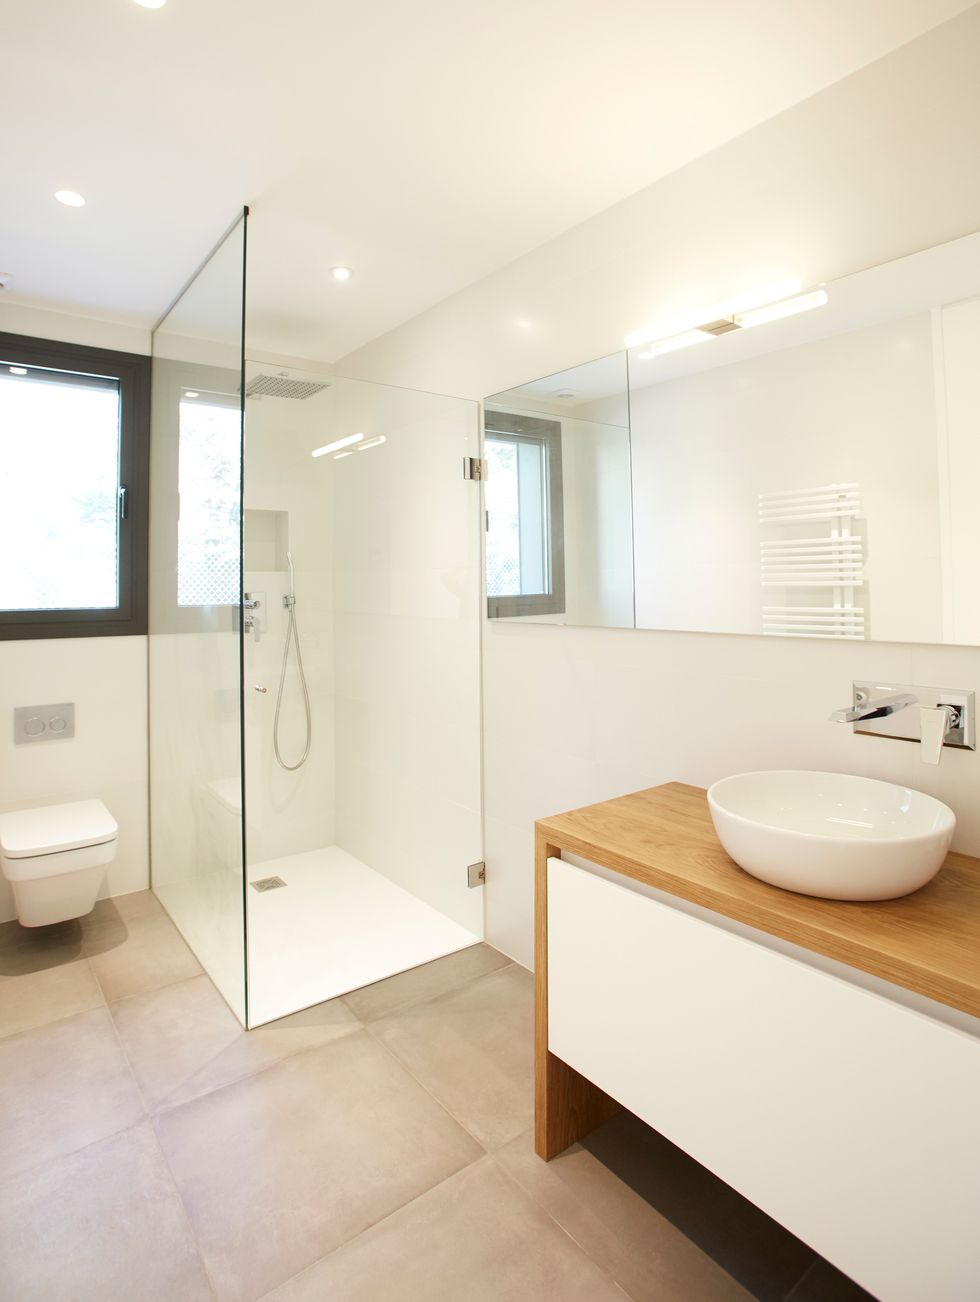 baño de estilo minimalista con mueble de lavabo en madera y color blanco